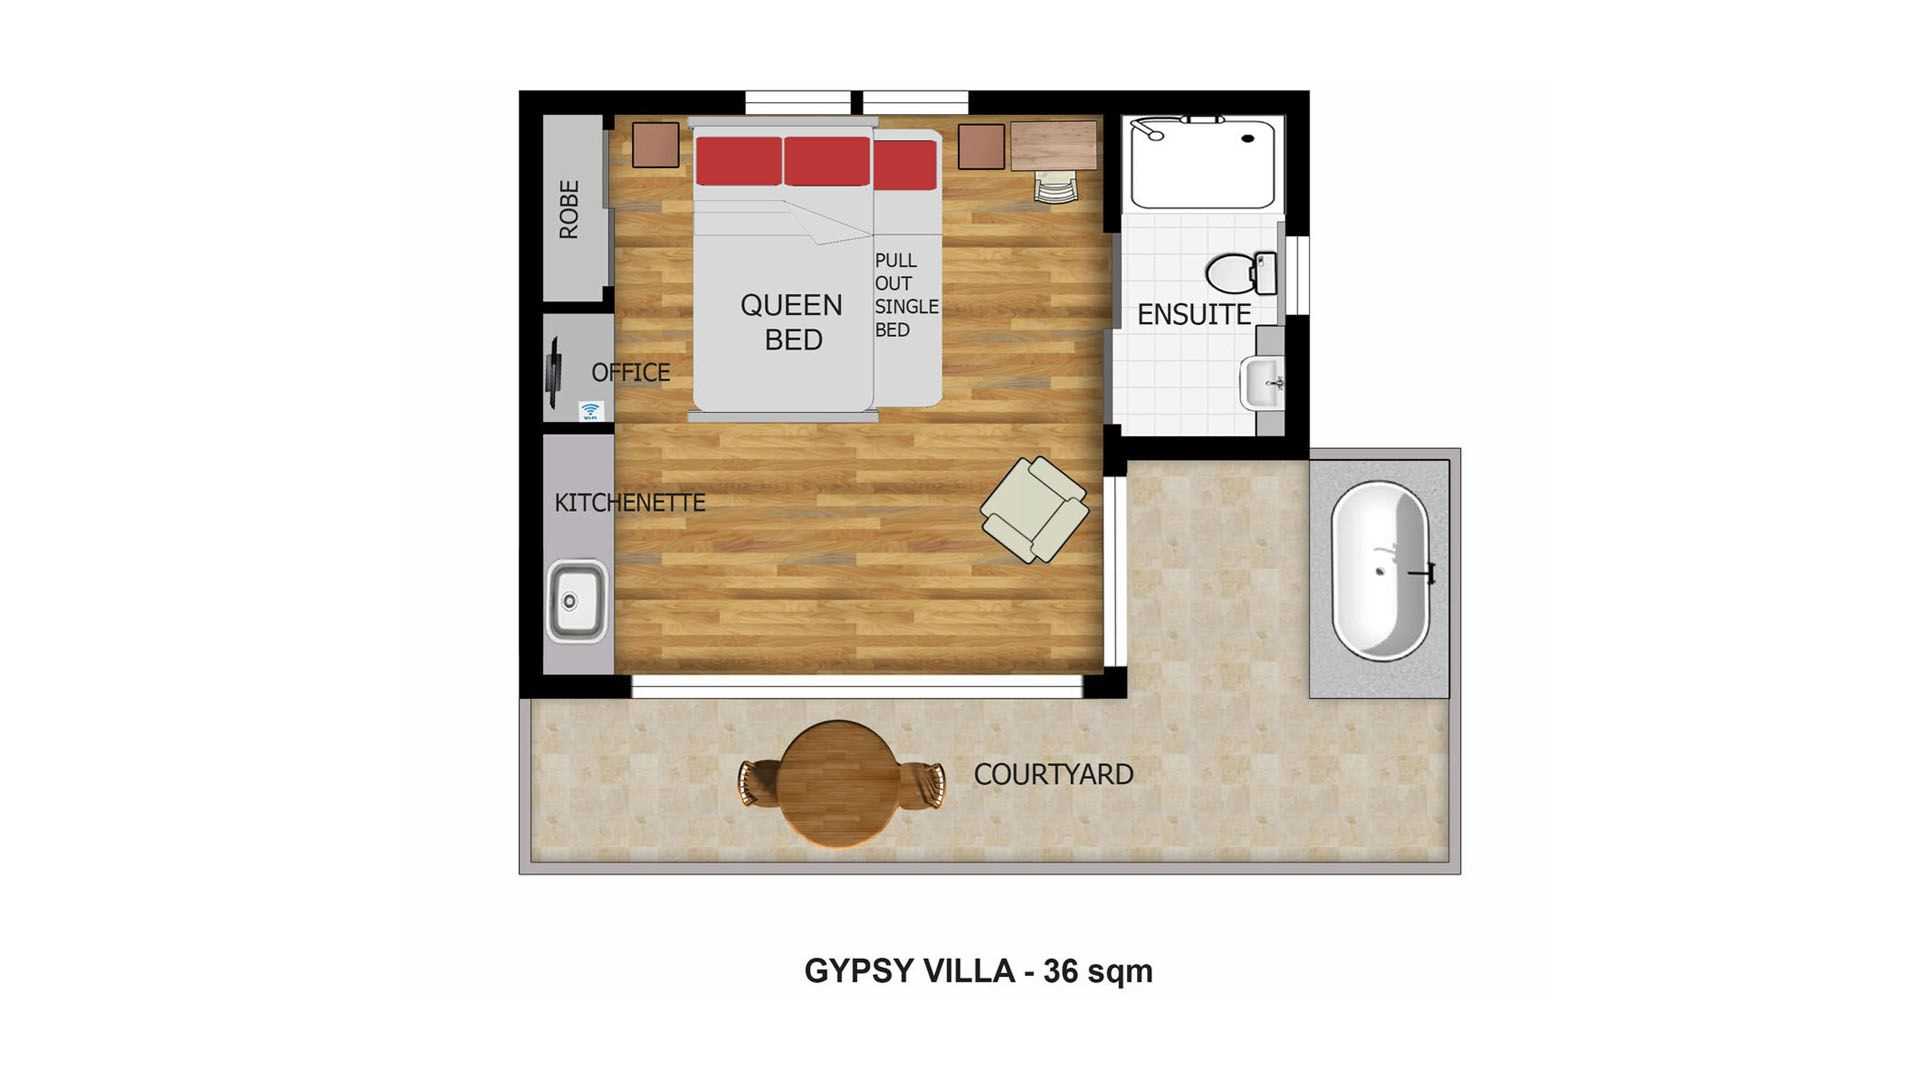 Gypsy Villa